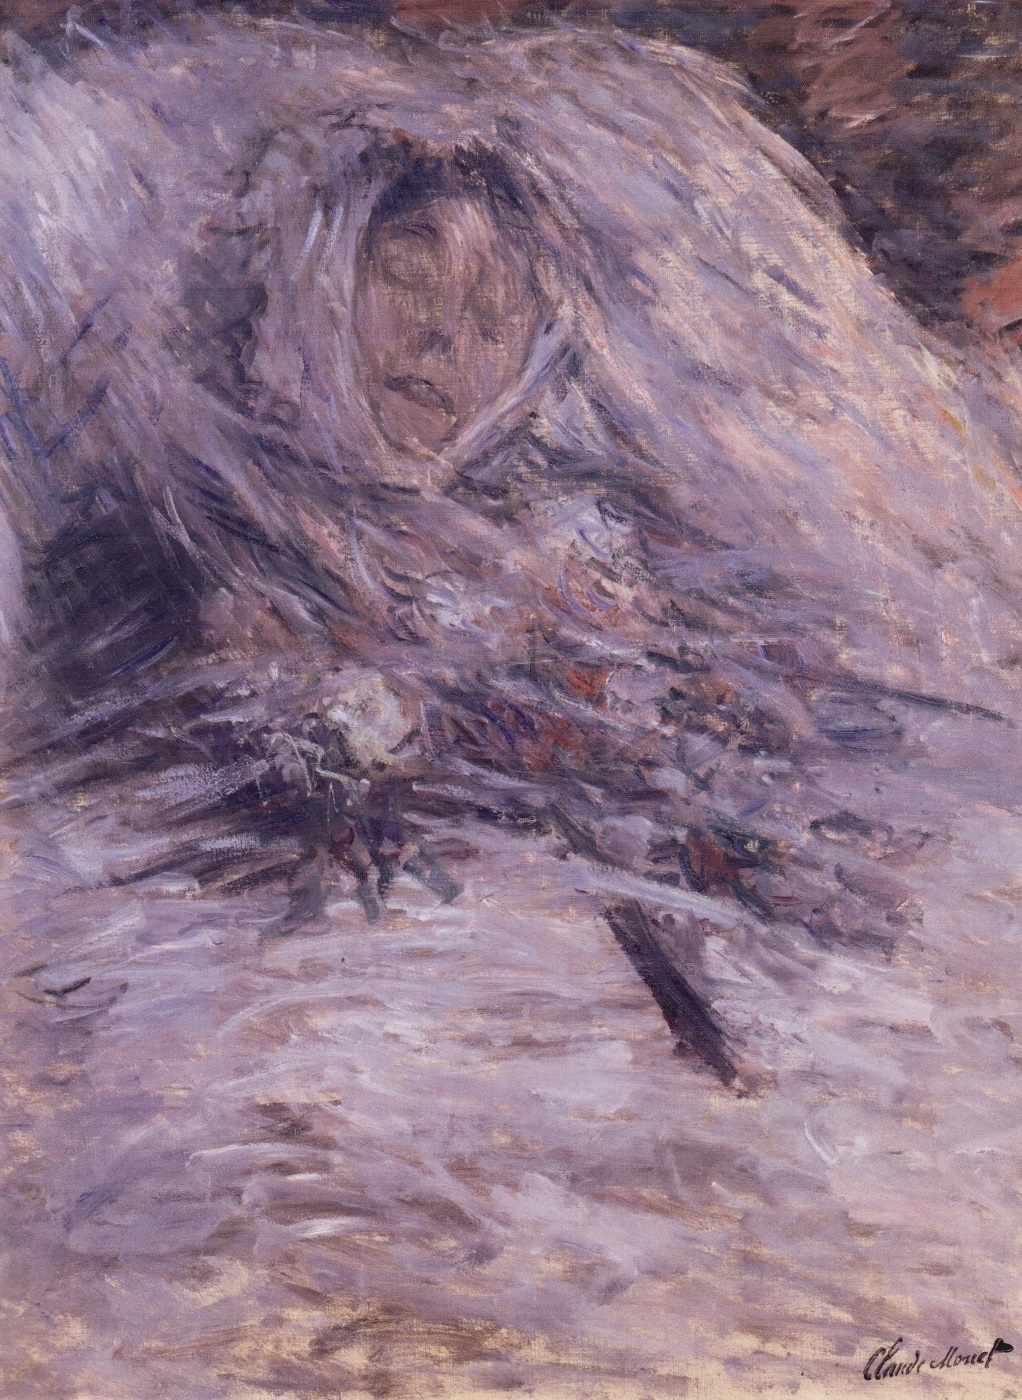 Клод Моне. "Камилла на смертном одре". 1879. Музей Орсе, Париж.